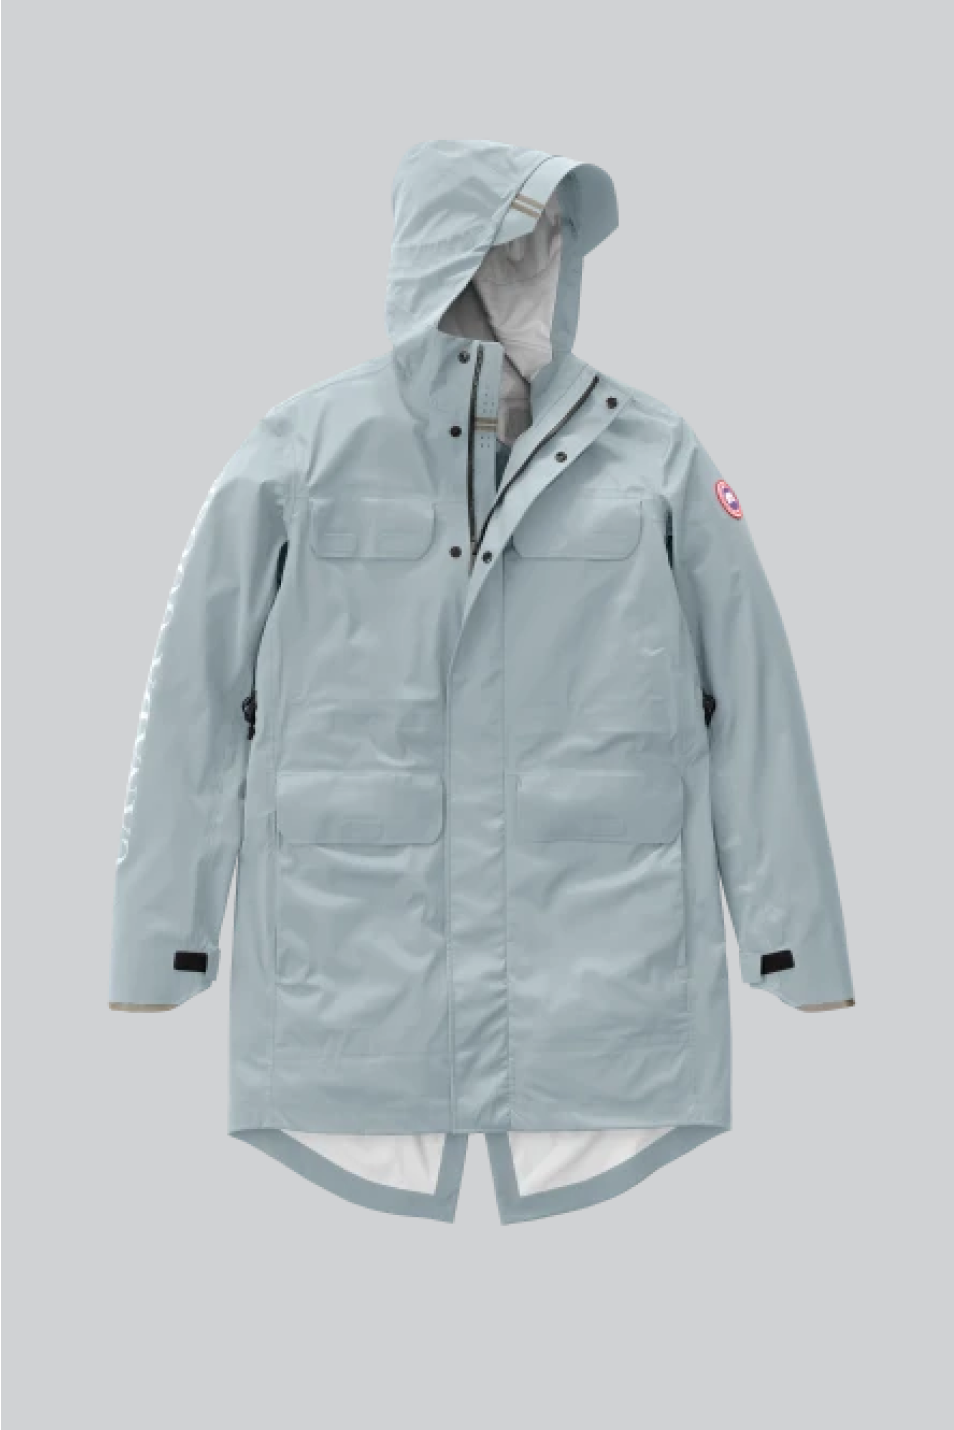 Weleyclore Lightweight Waterproof Rain Coats for Men